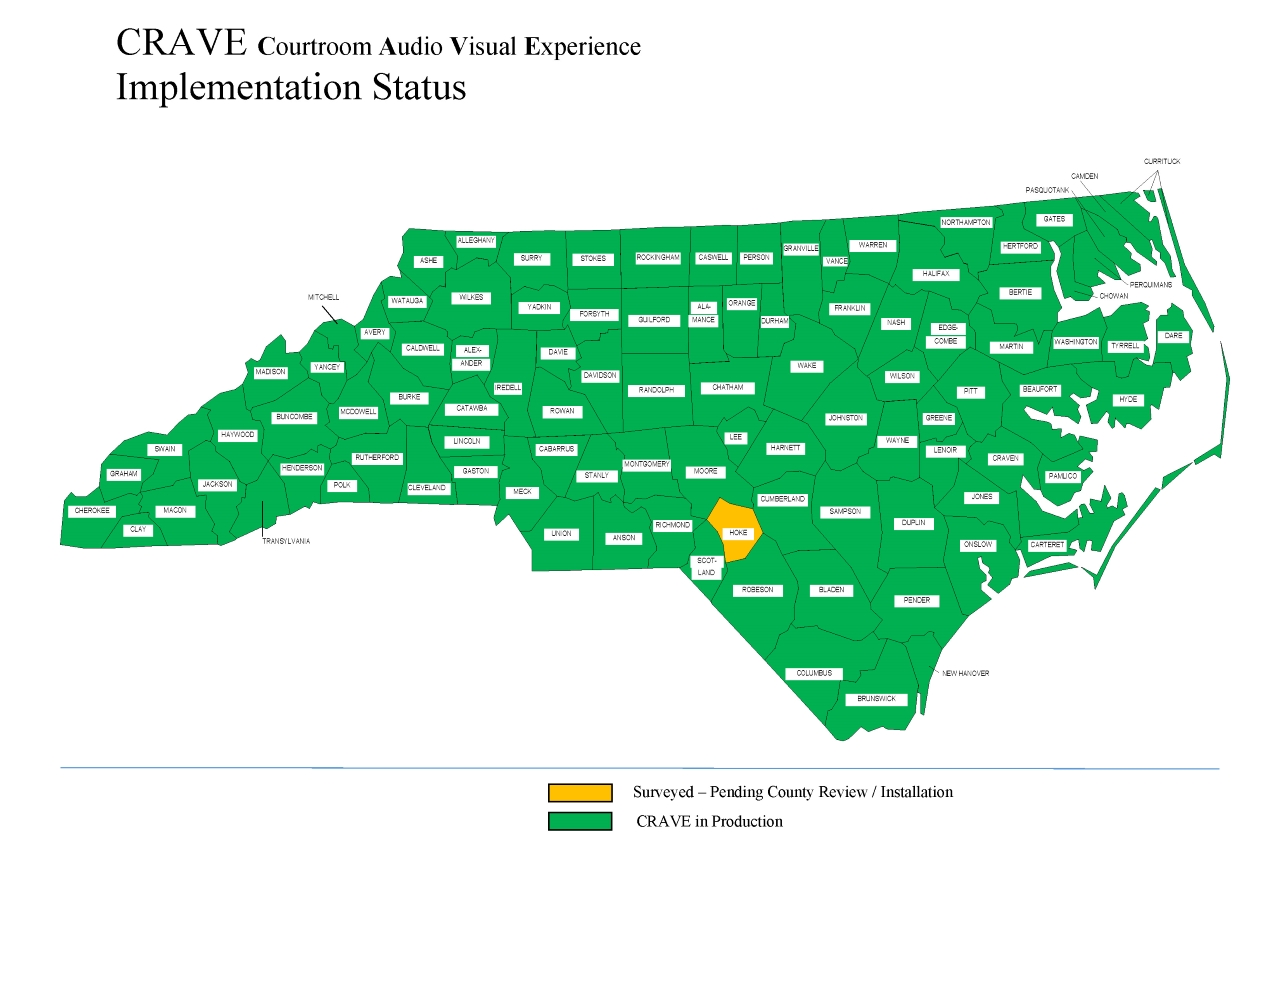 CRAVE Survey Status Map